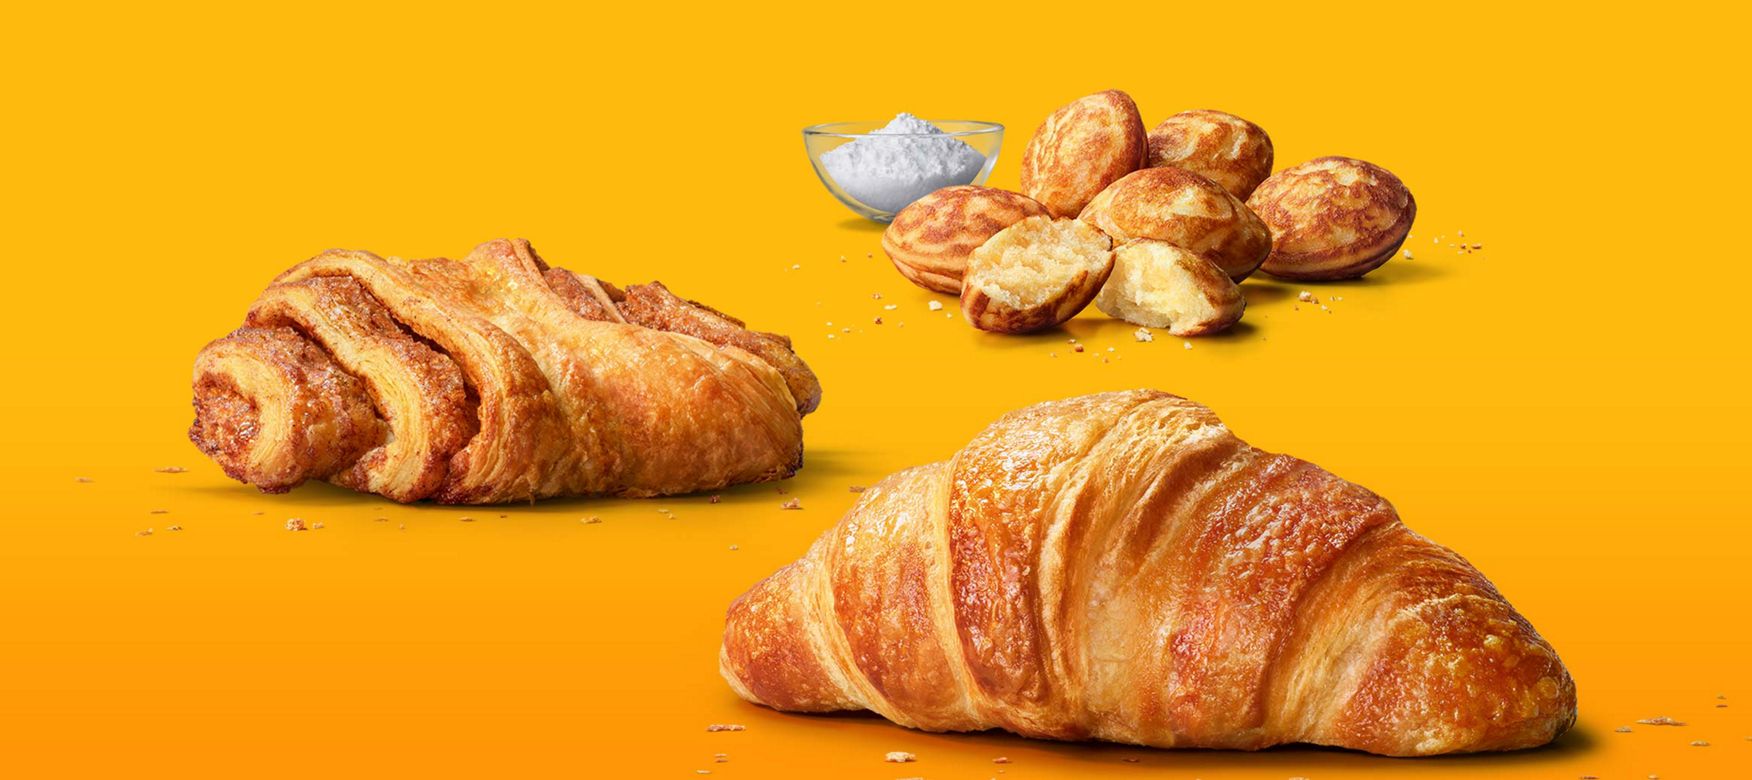 Das Bild zeigt ein Franzbrötchen, ein Buttercroissant und Mini Pancakes mit Puderzucker.